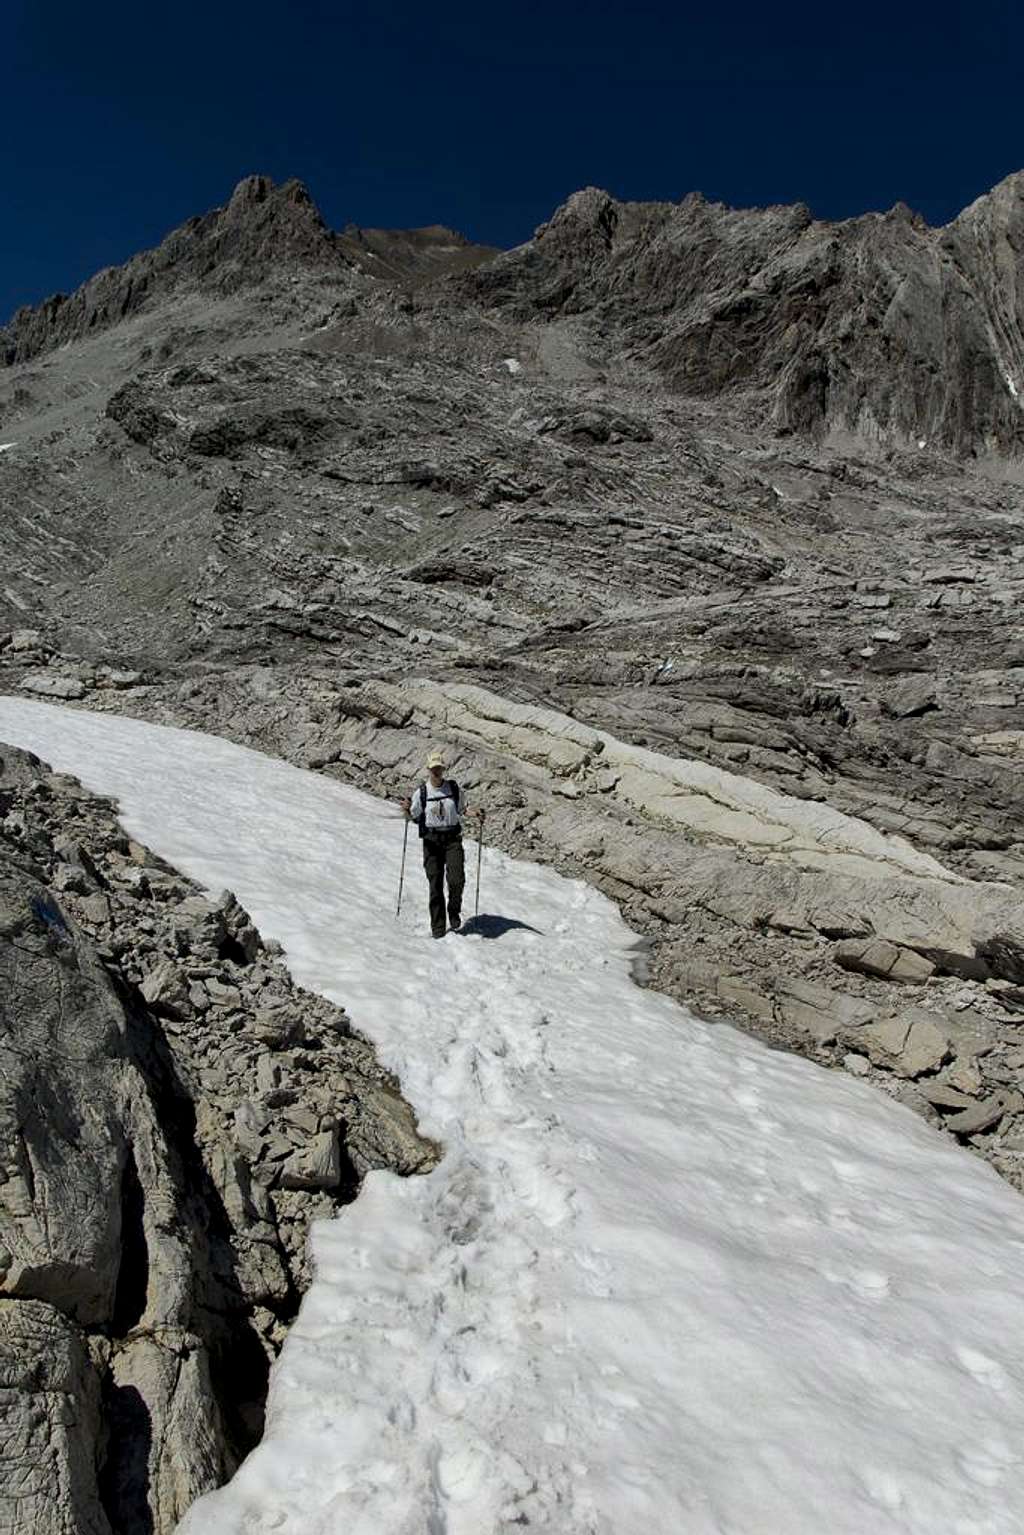 Snow on Tote Alp beneath the Schesaplana summit